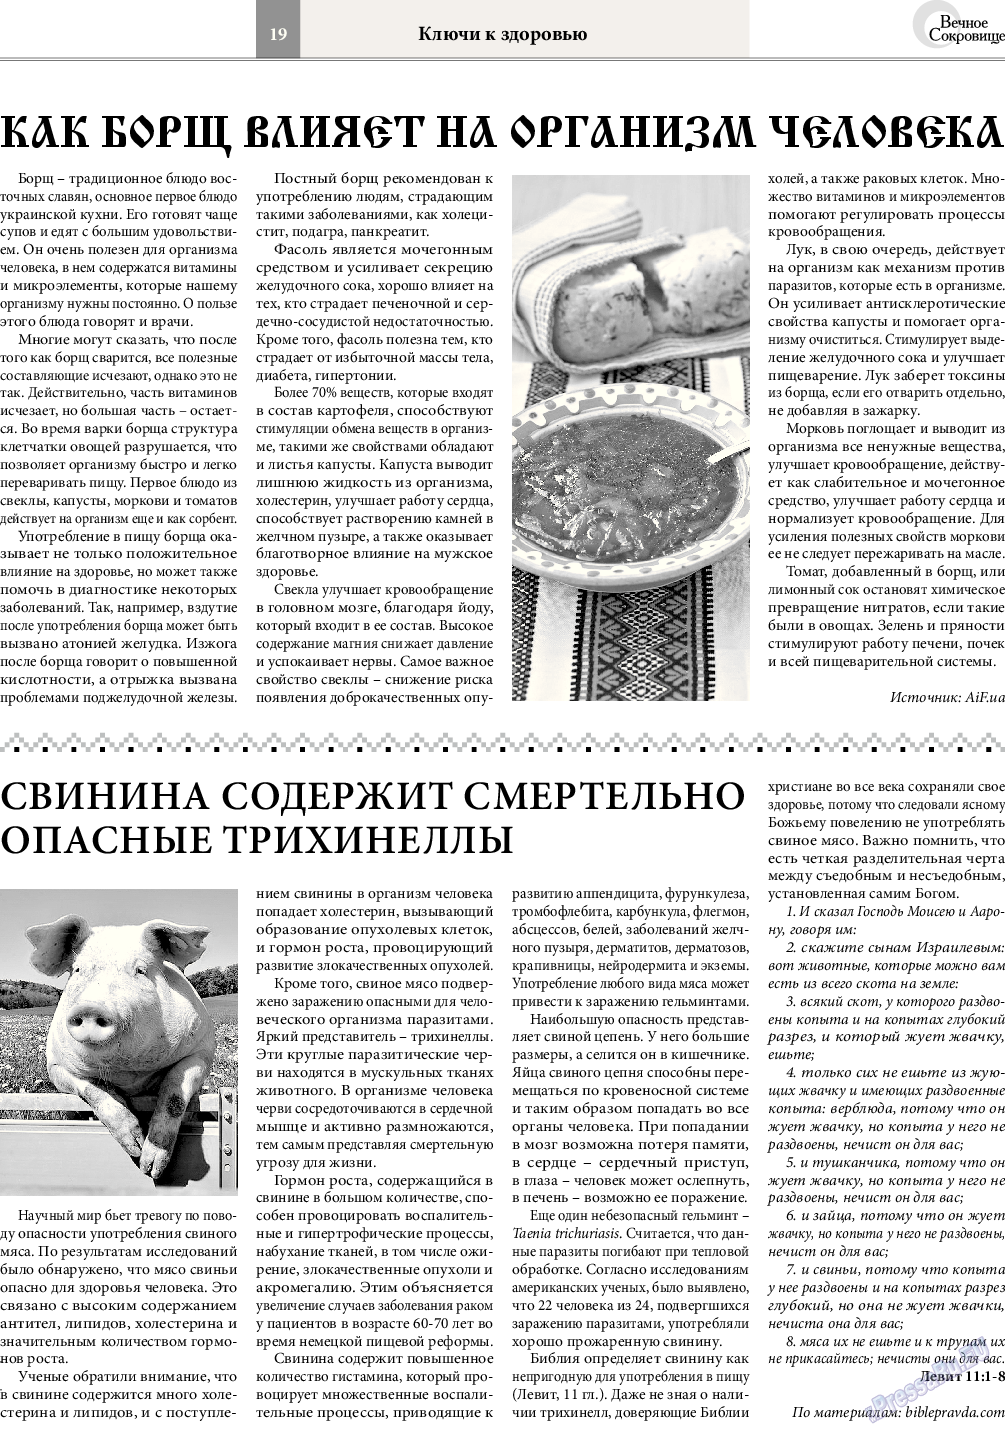 Вечное сокровище, газета. 2015 №2 стр.19